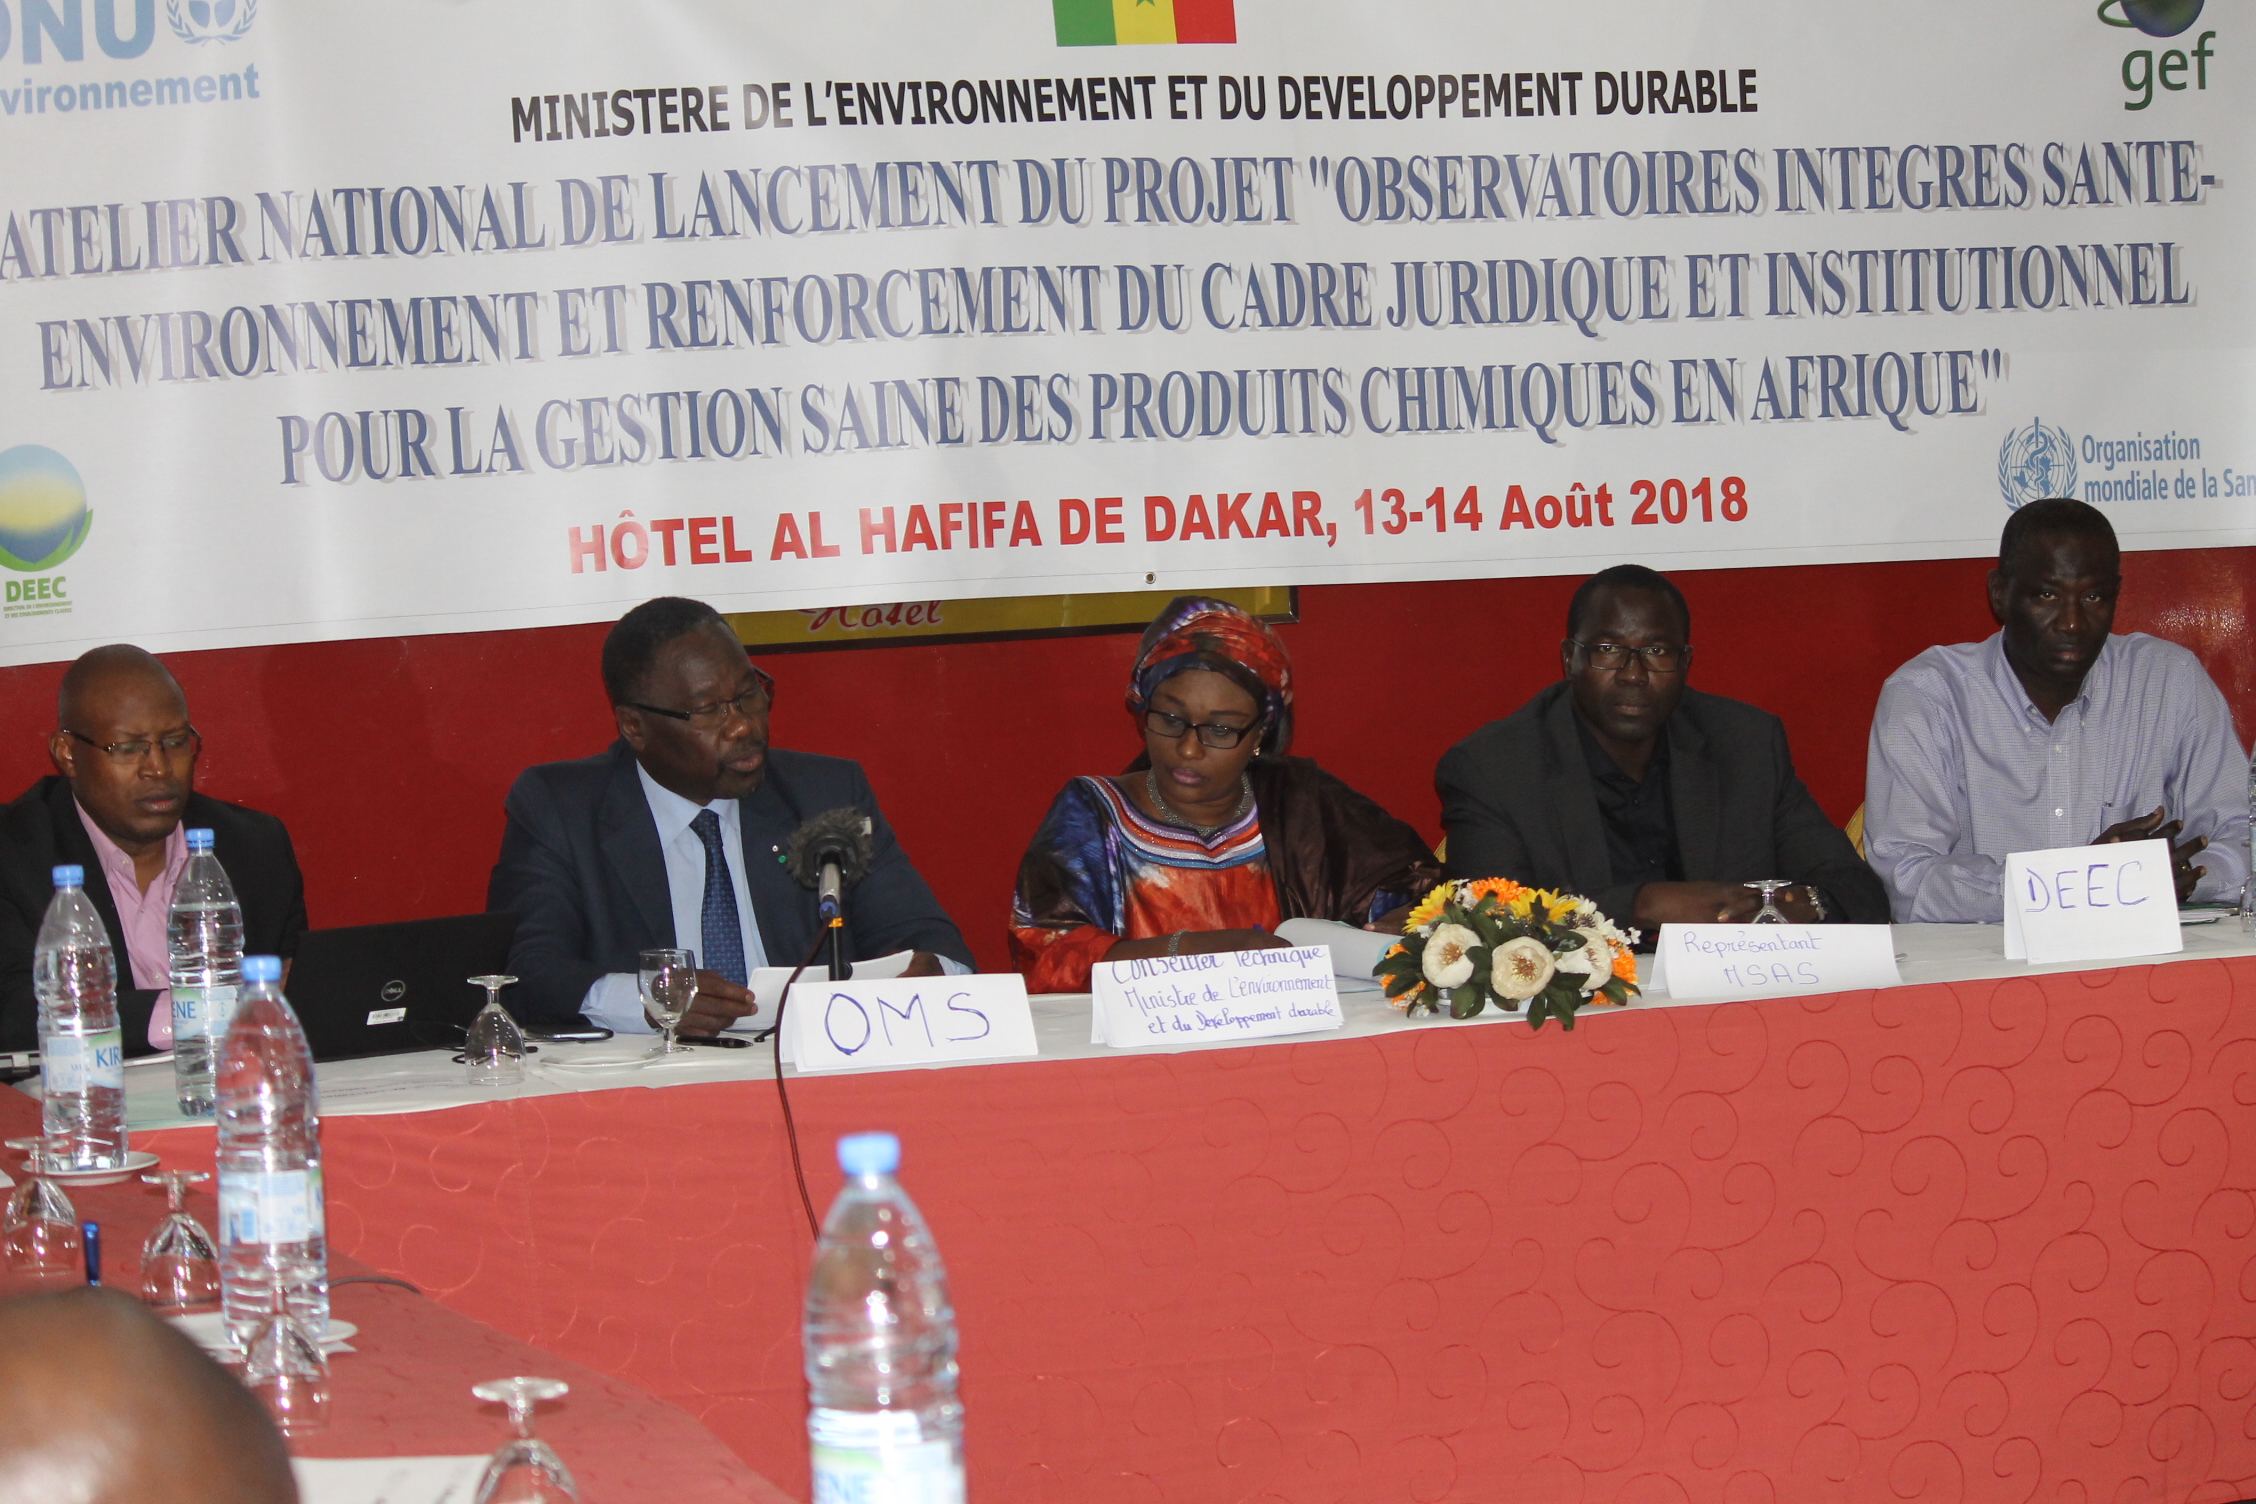 GESTION DES PRODUITS CHIMIQUE : Le Sénégal met en place un observatoire intégré santé environnement